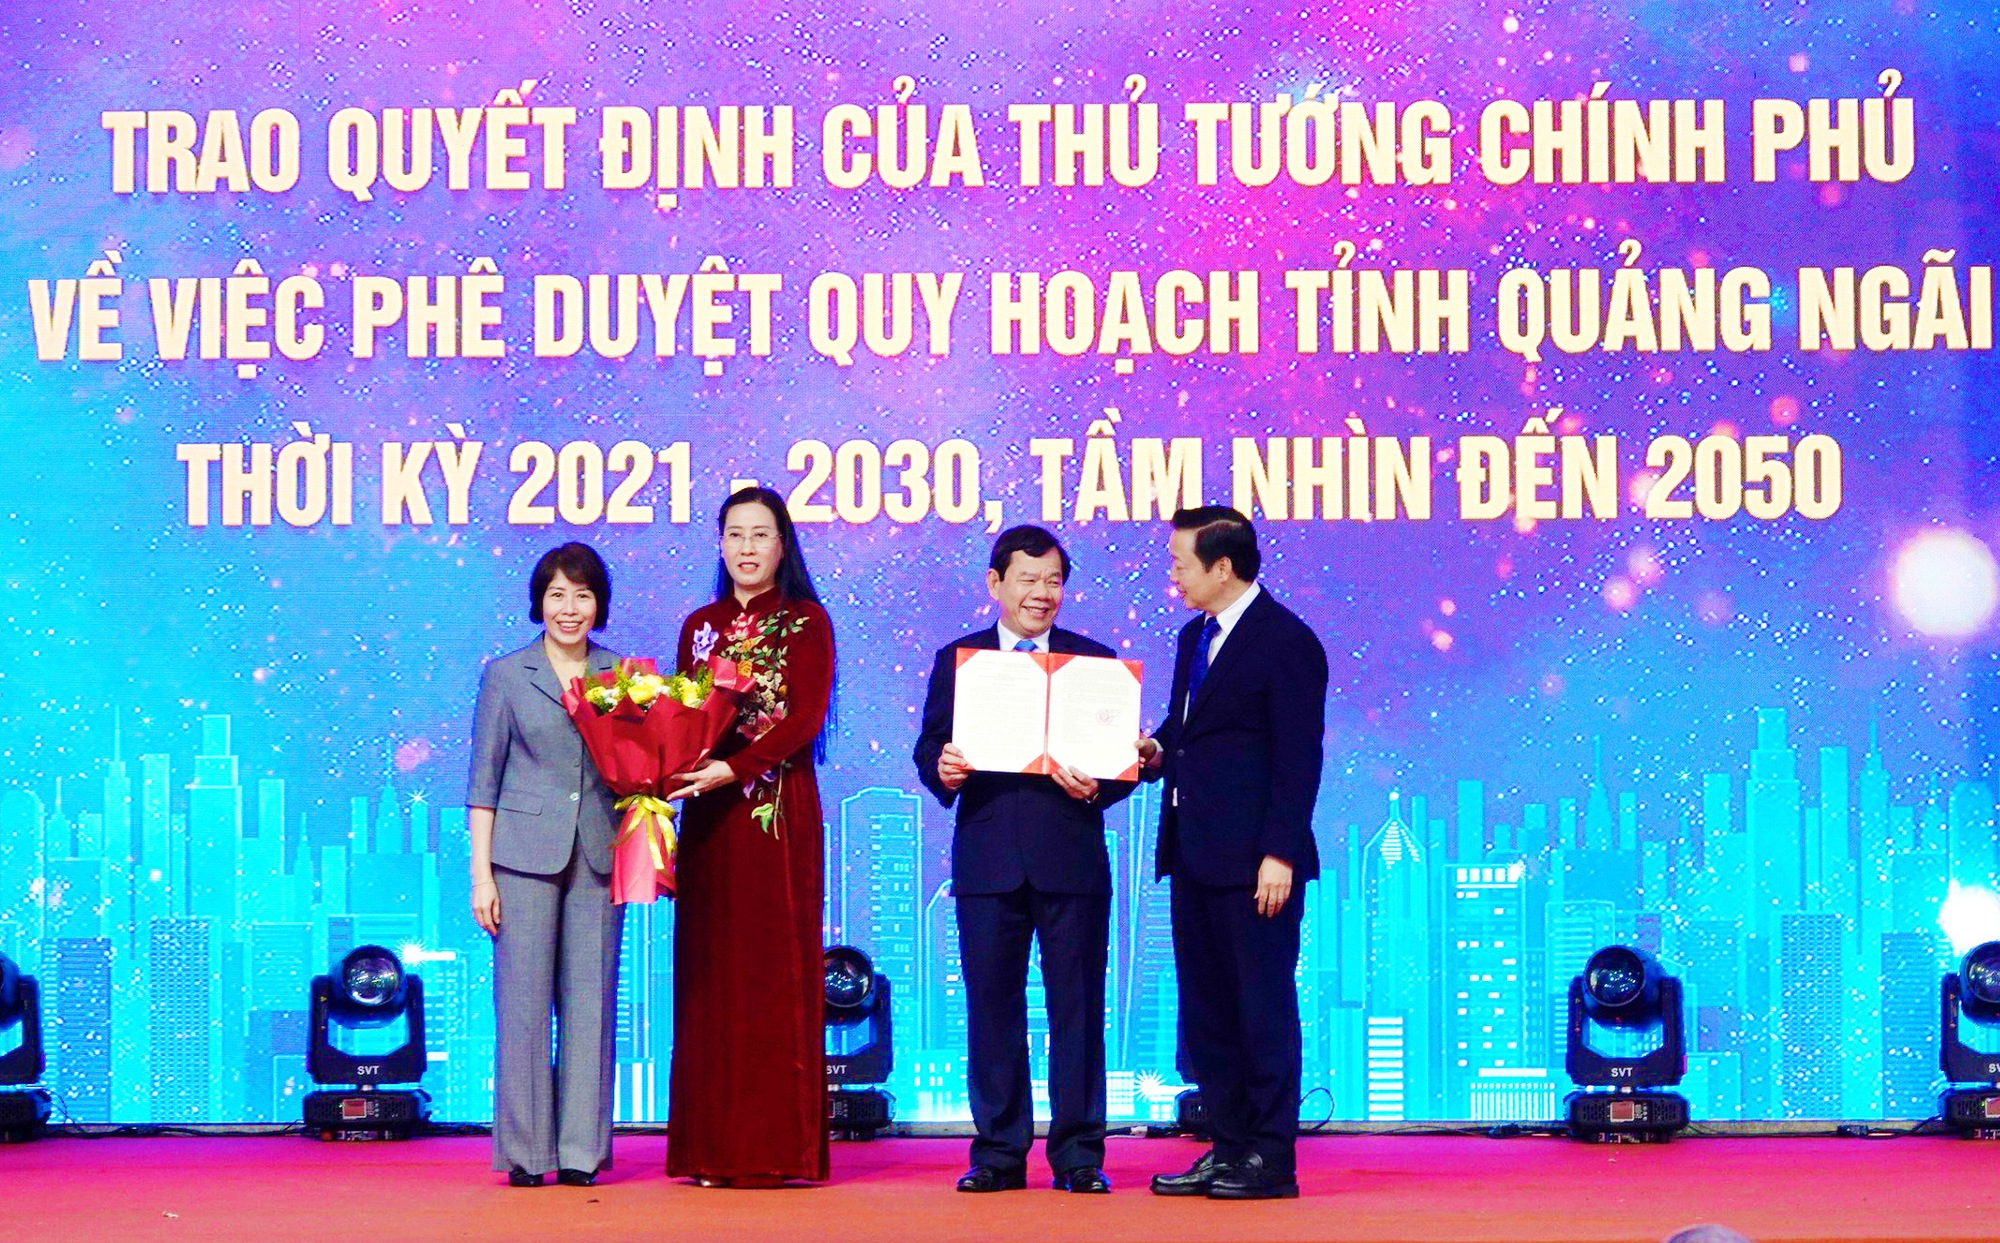 Quảng Ngãi công bố quy hoạch tỉnh thời kỳ 2021-2030 và khởi công dự án đường 3.500 tỷ đồng - Ảnh 1.